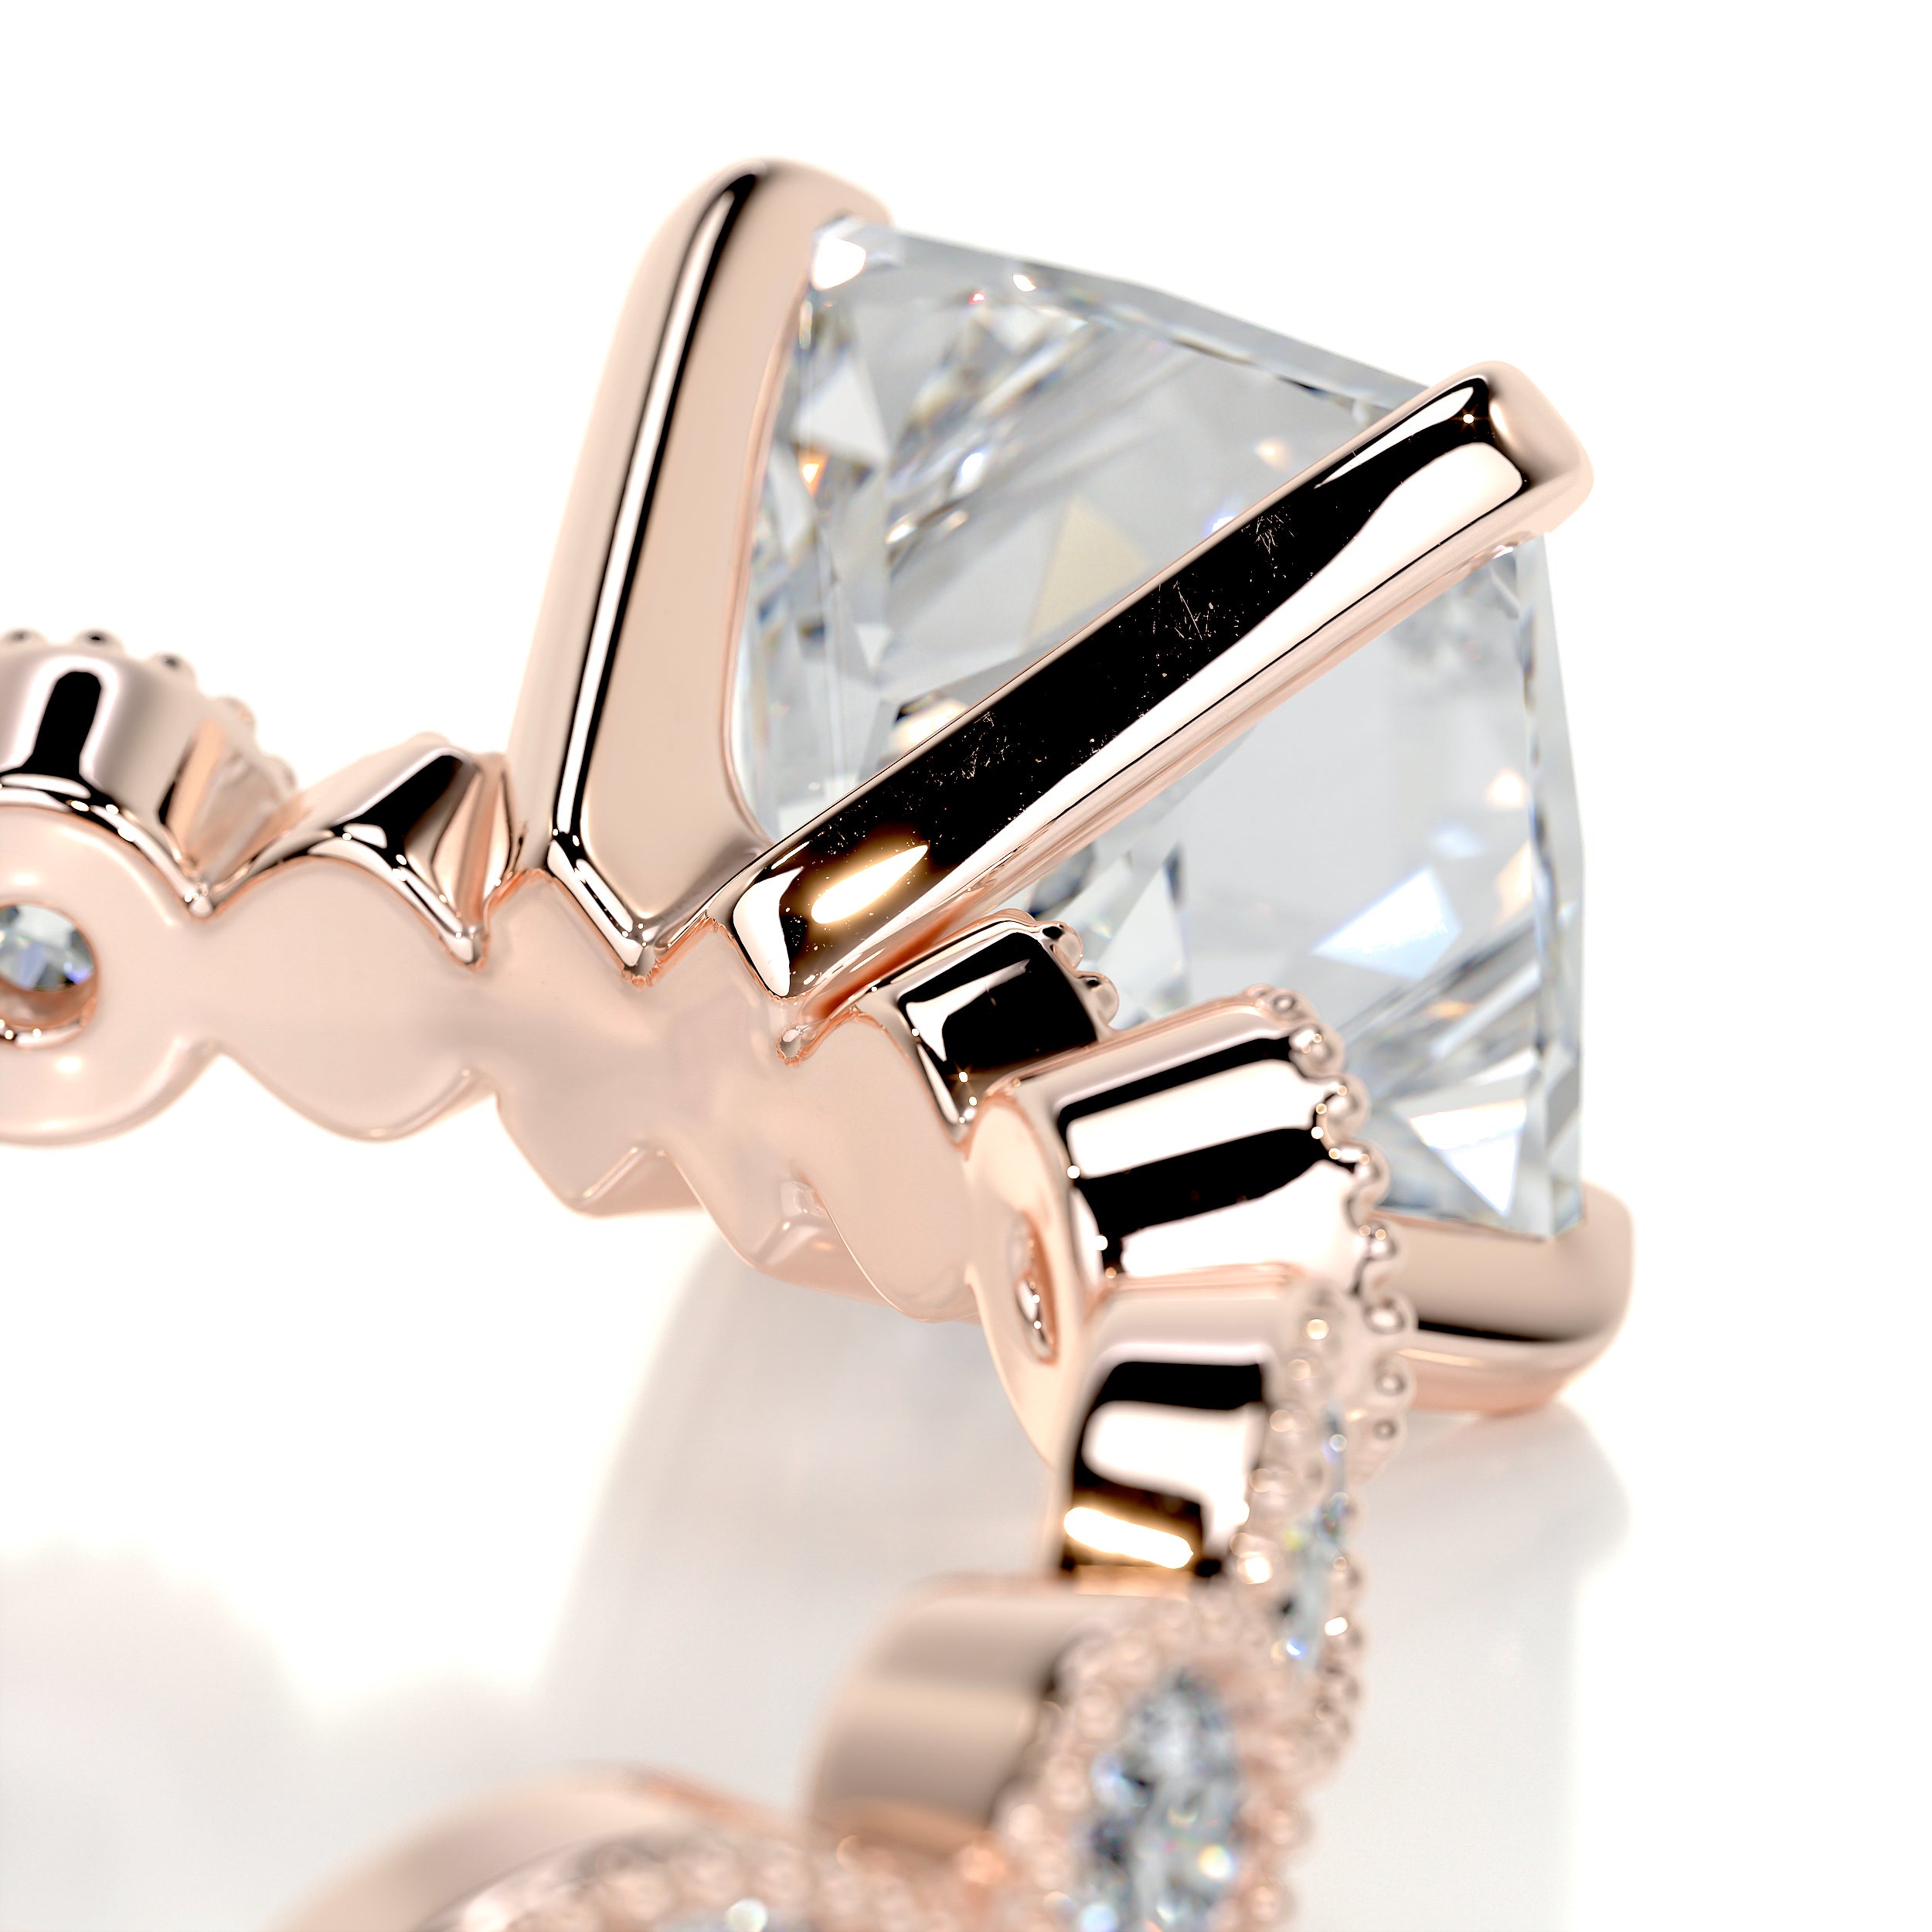 Amelia Diamond Engagement Ring   (2.5 Carat) -14K Rose Gold